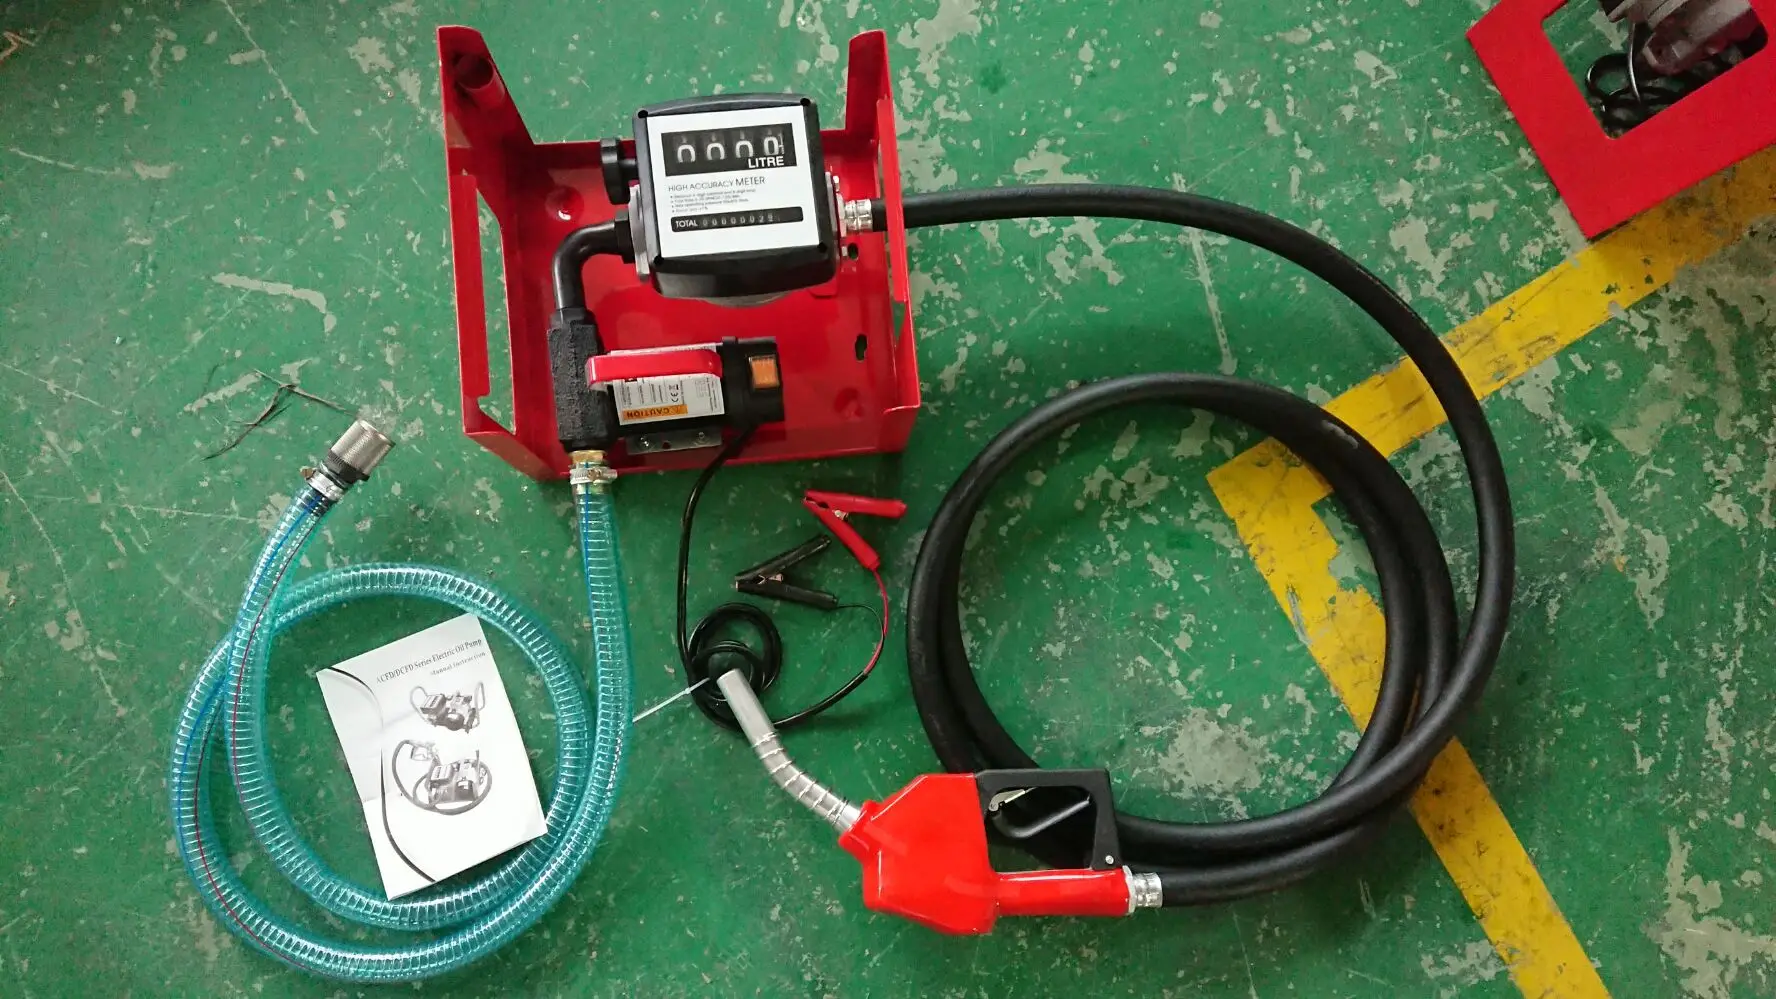 Fuel Pump Kits 1224bt-73 AC Diesel Transfer Pump Set with Meter